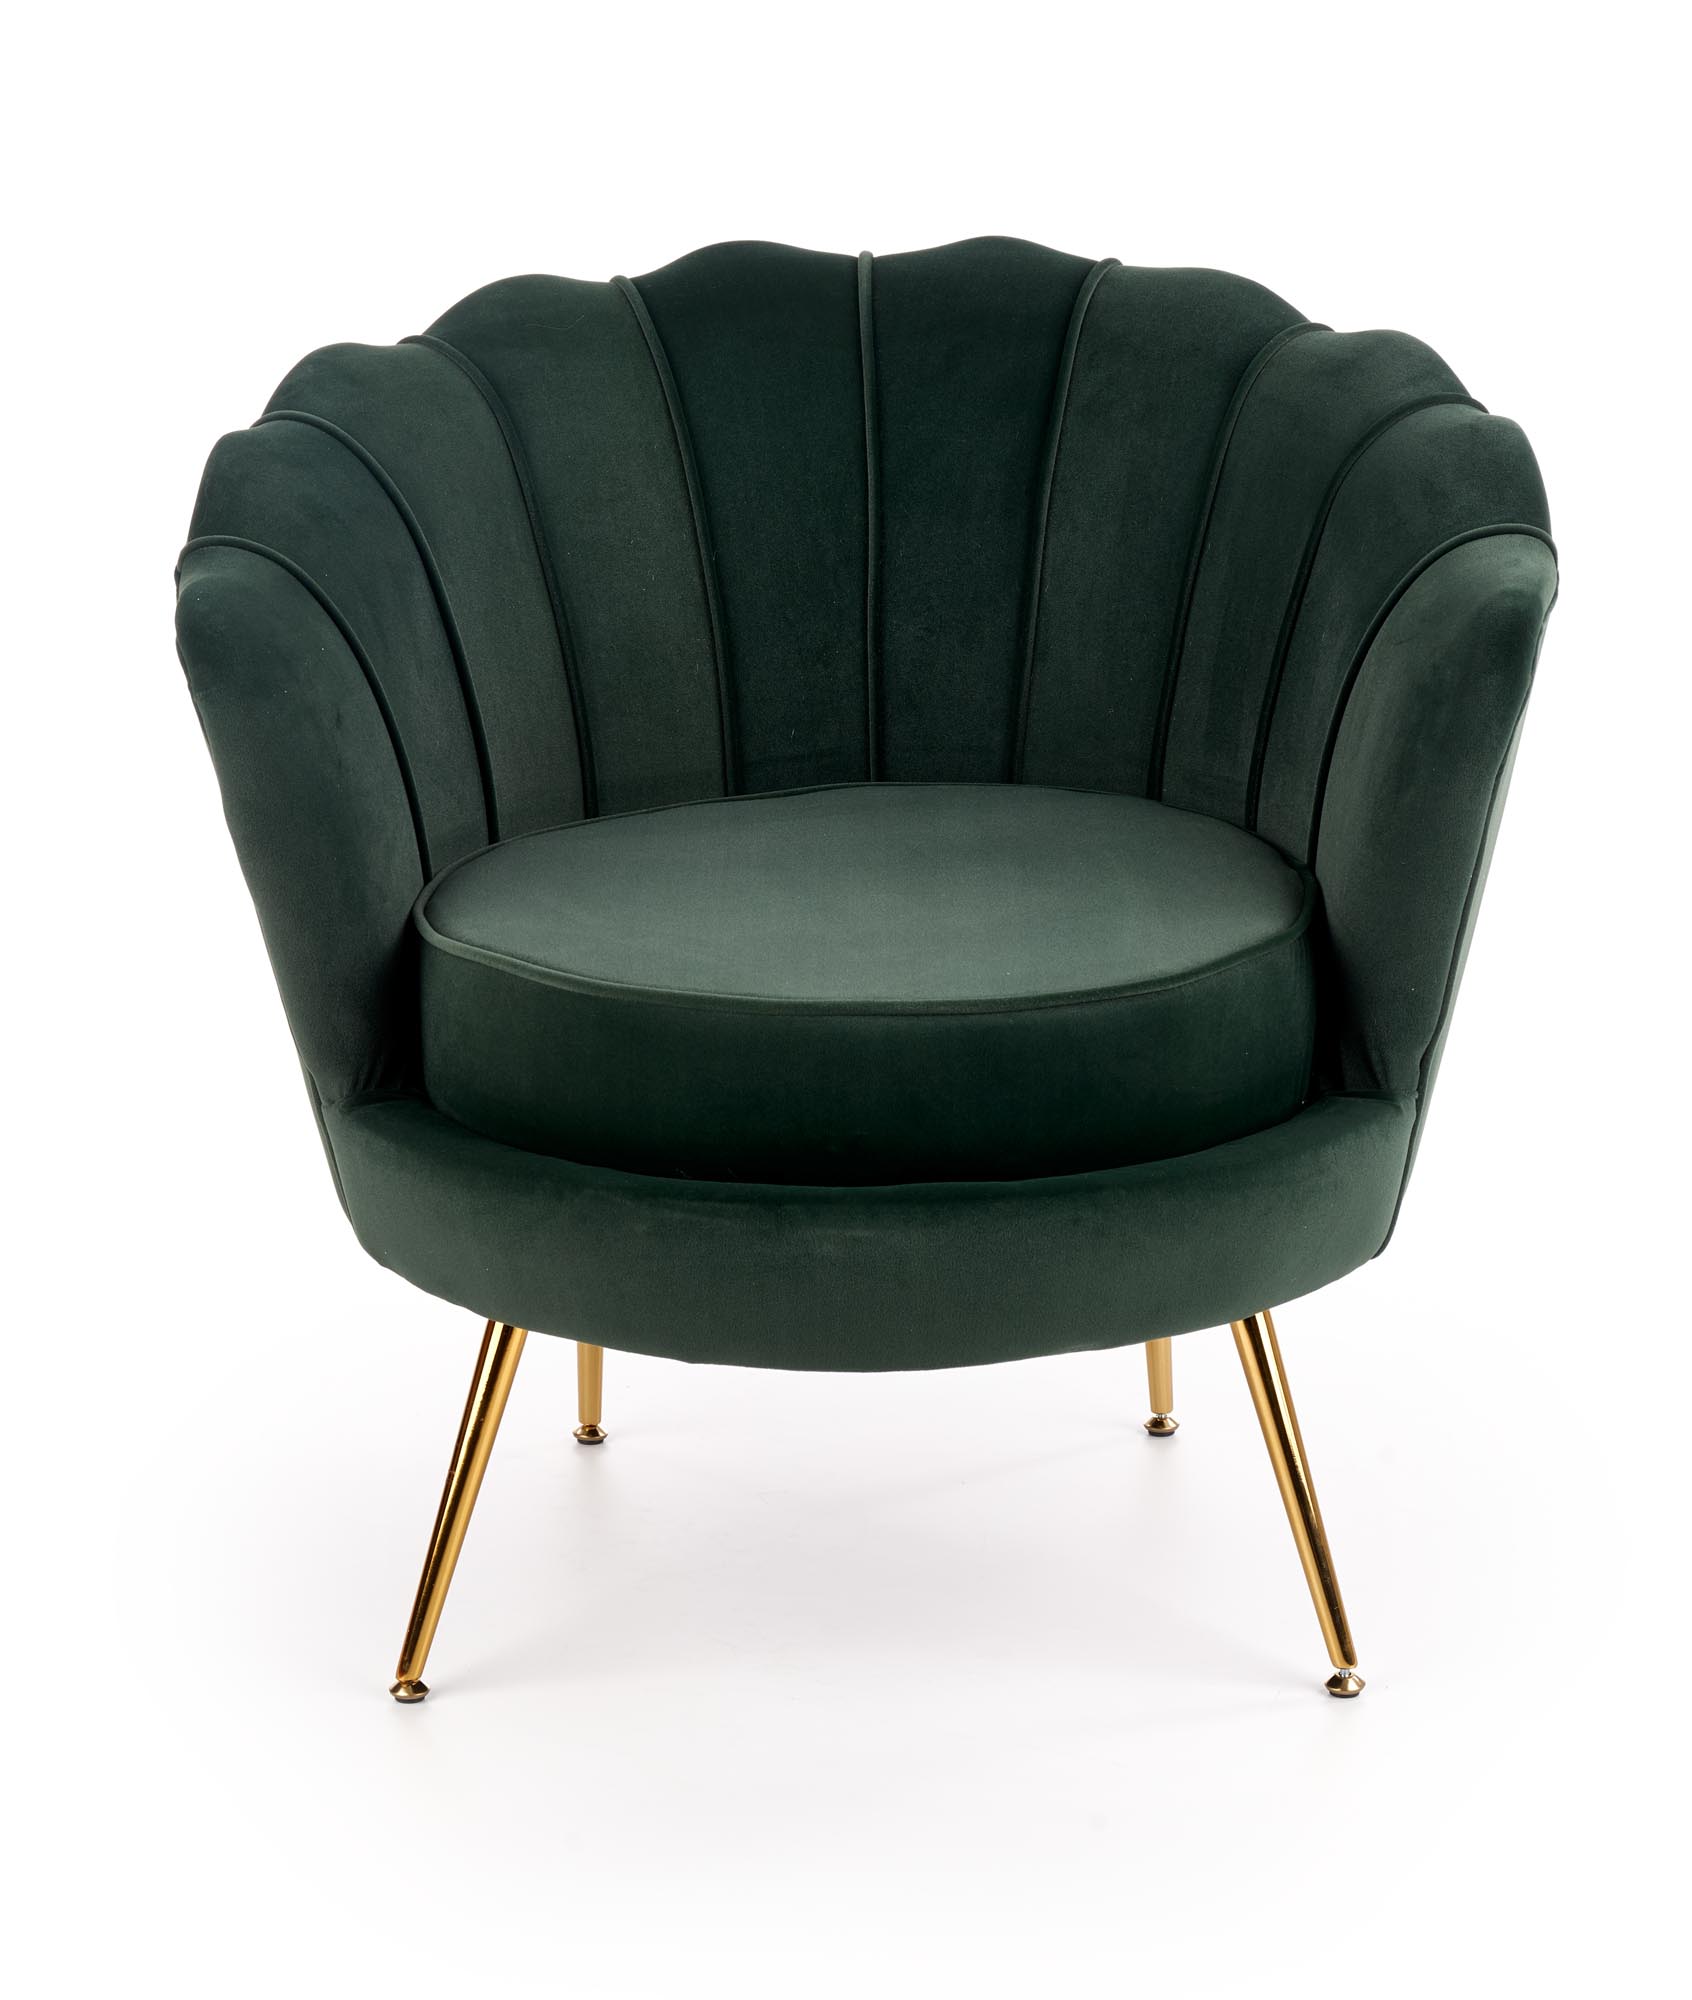 AMORINITO fotel wypoczynkowy ciemny zielony / złoty amorinito fotel wypoczynkowy ciemny zielony / złoty